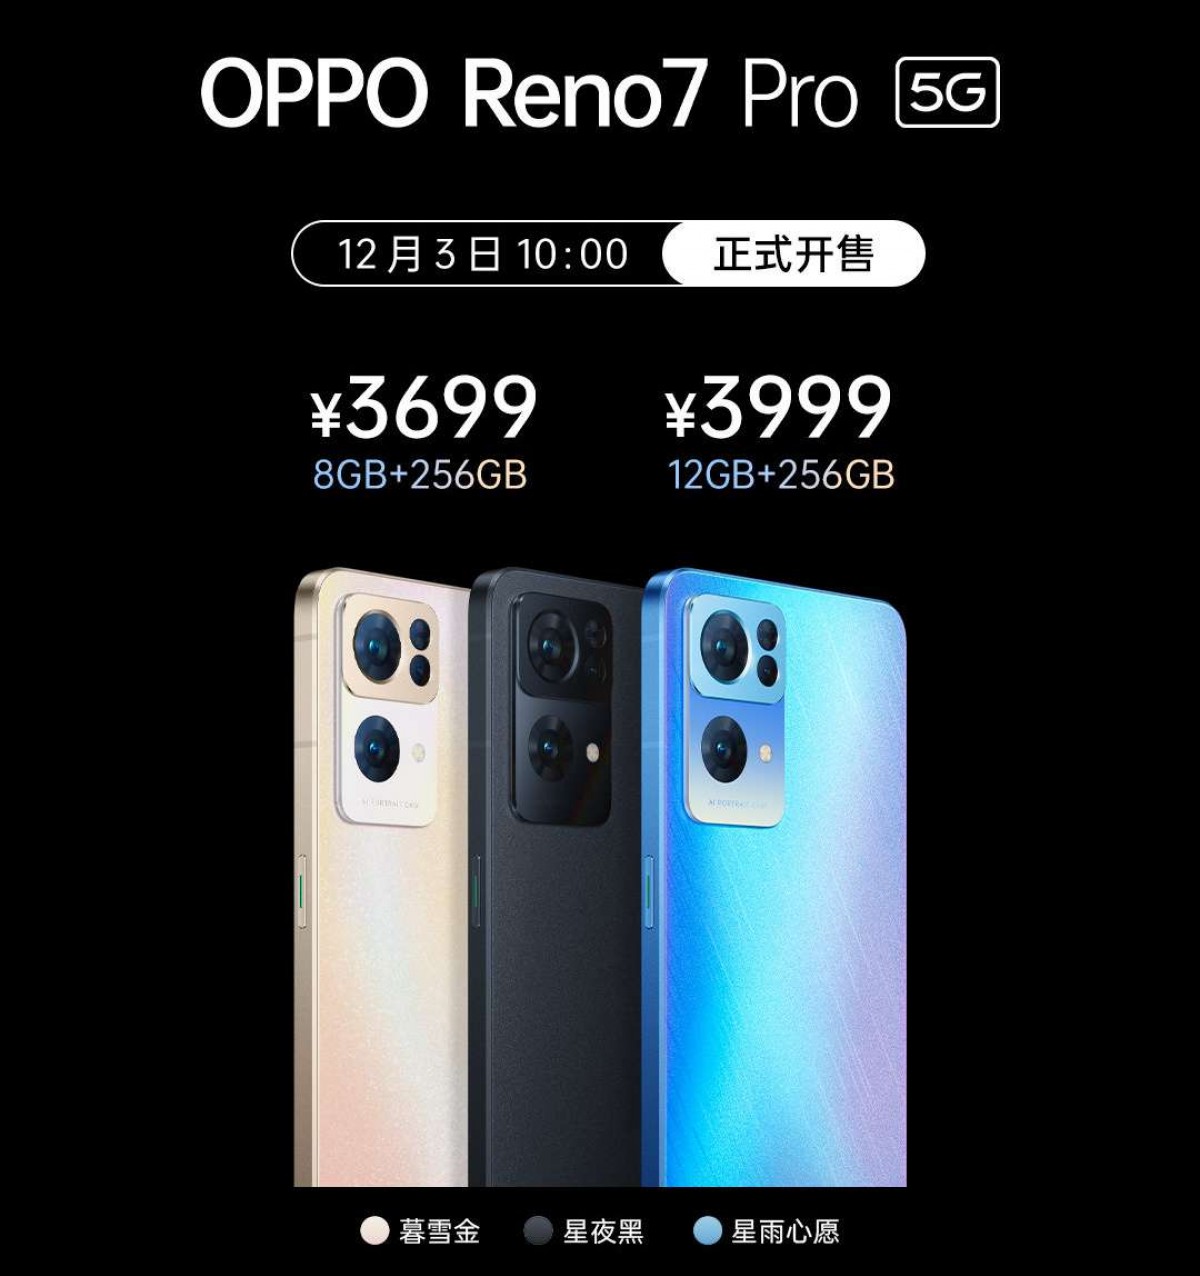 OPPO Reno7, Reno7 Pro và Reno 7 SE chính thức ra mắt tại Trung Quốc